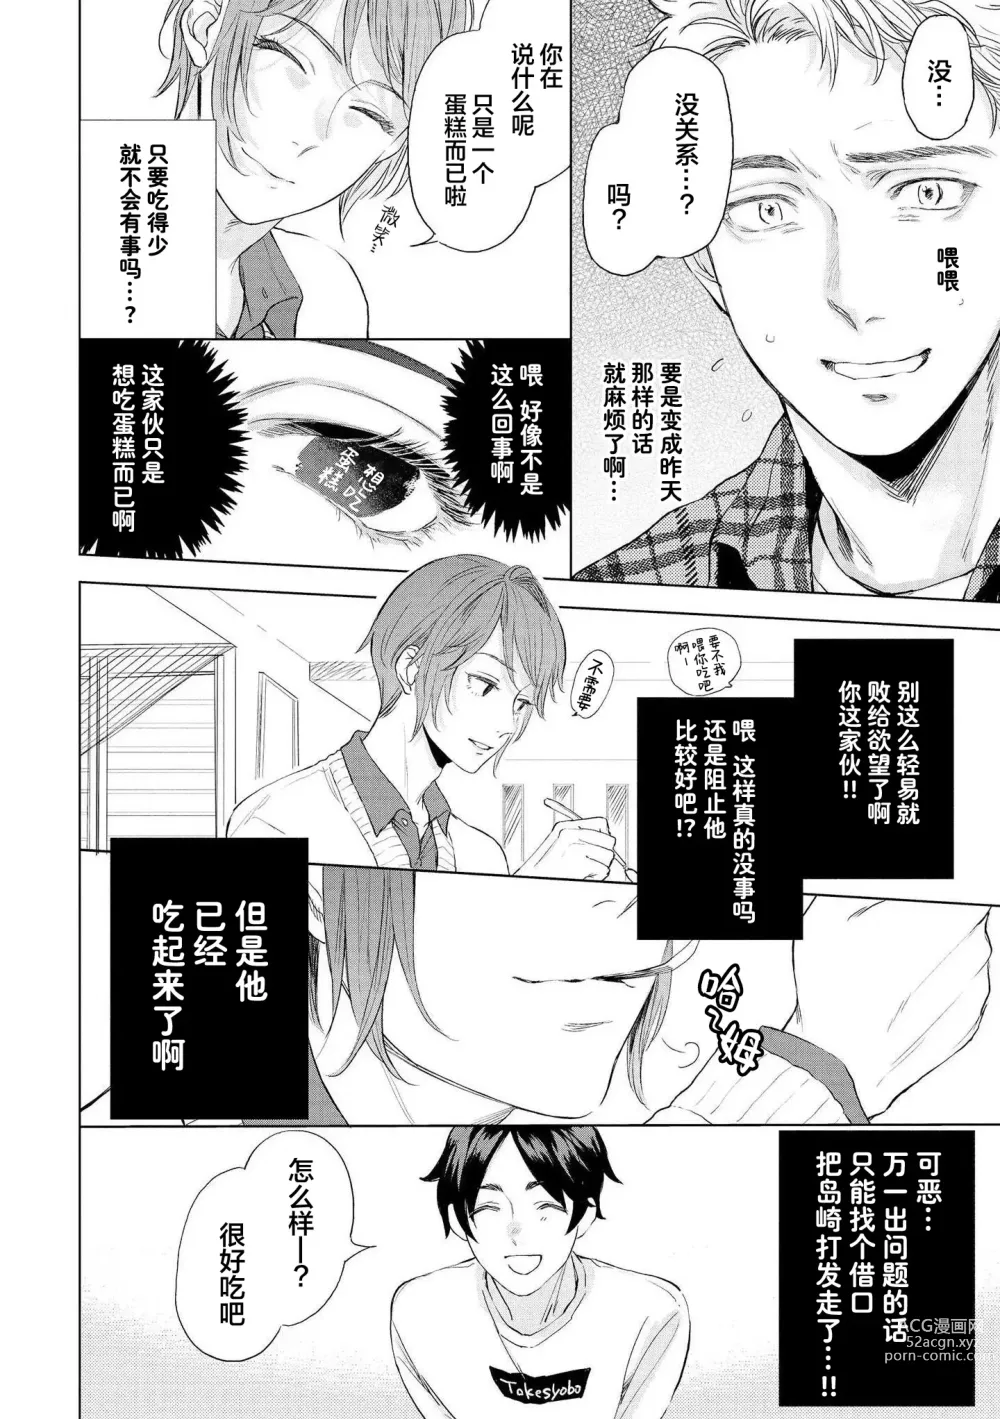 Page 58 of manga 小恶魔的草莓蛋糕